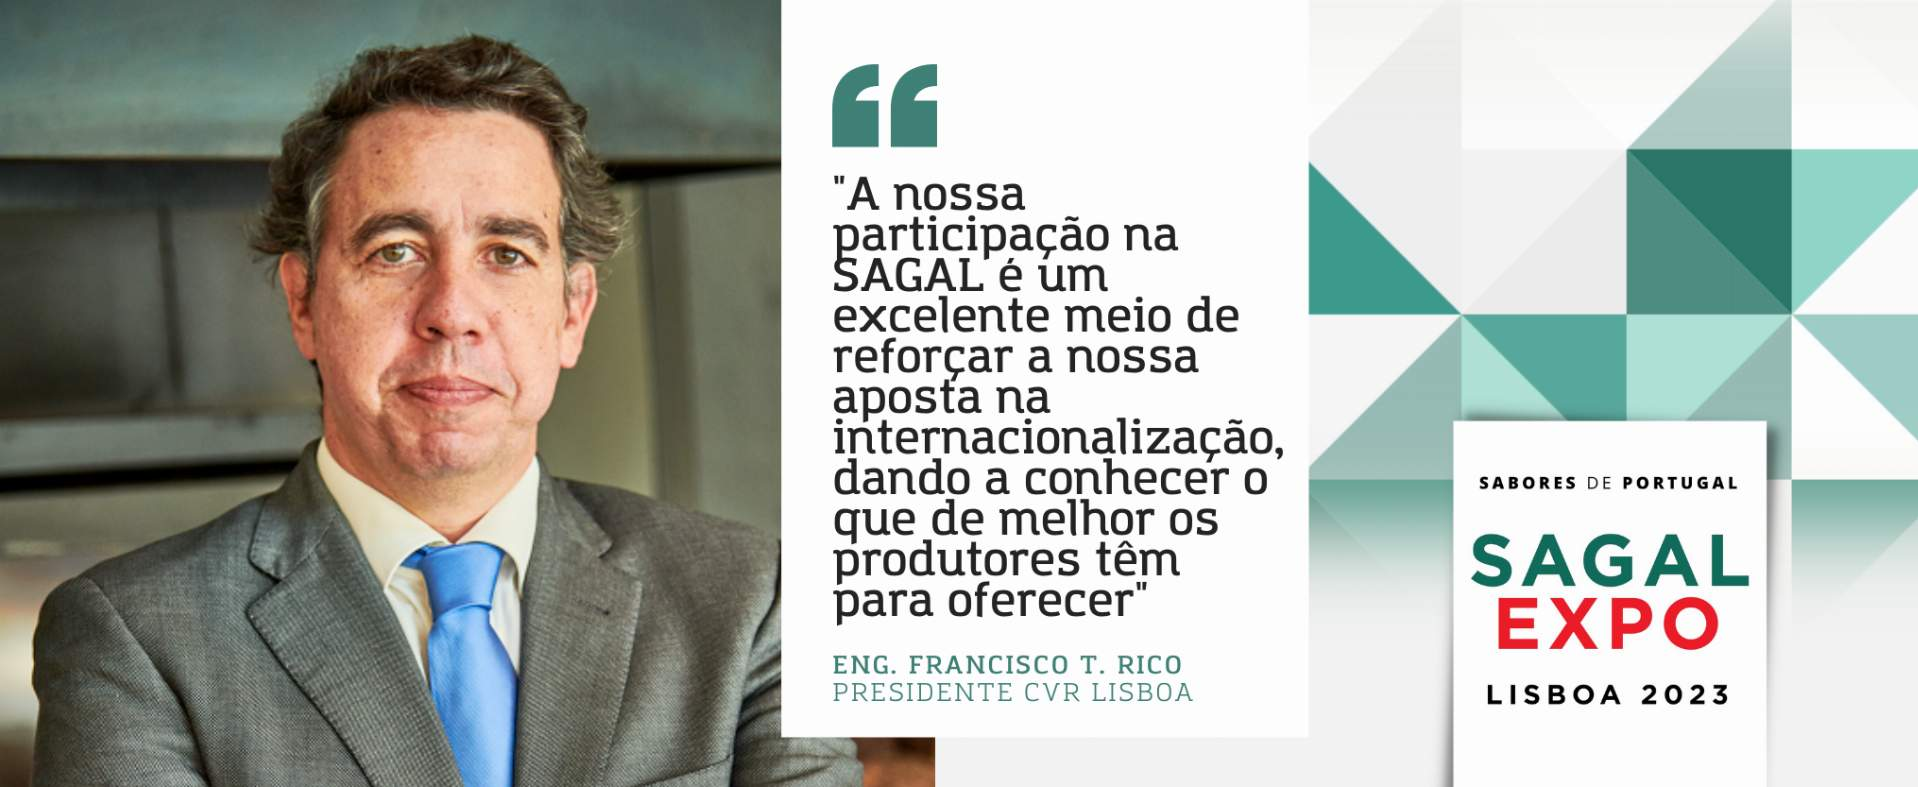 CVR Lisboa: "A nossa participação na SAGAL é um excelente meio de reforçar a nossa aposta na internacionalização, dando a conhecer o que de melhor os produtores têm para oferecer"